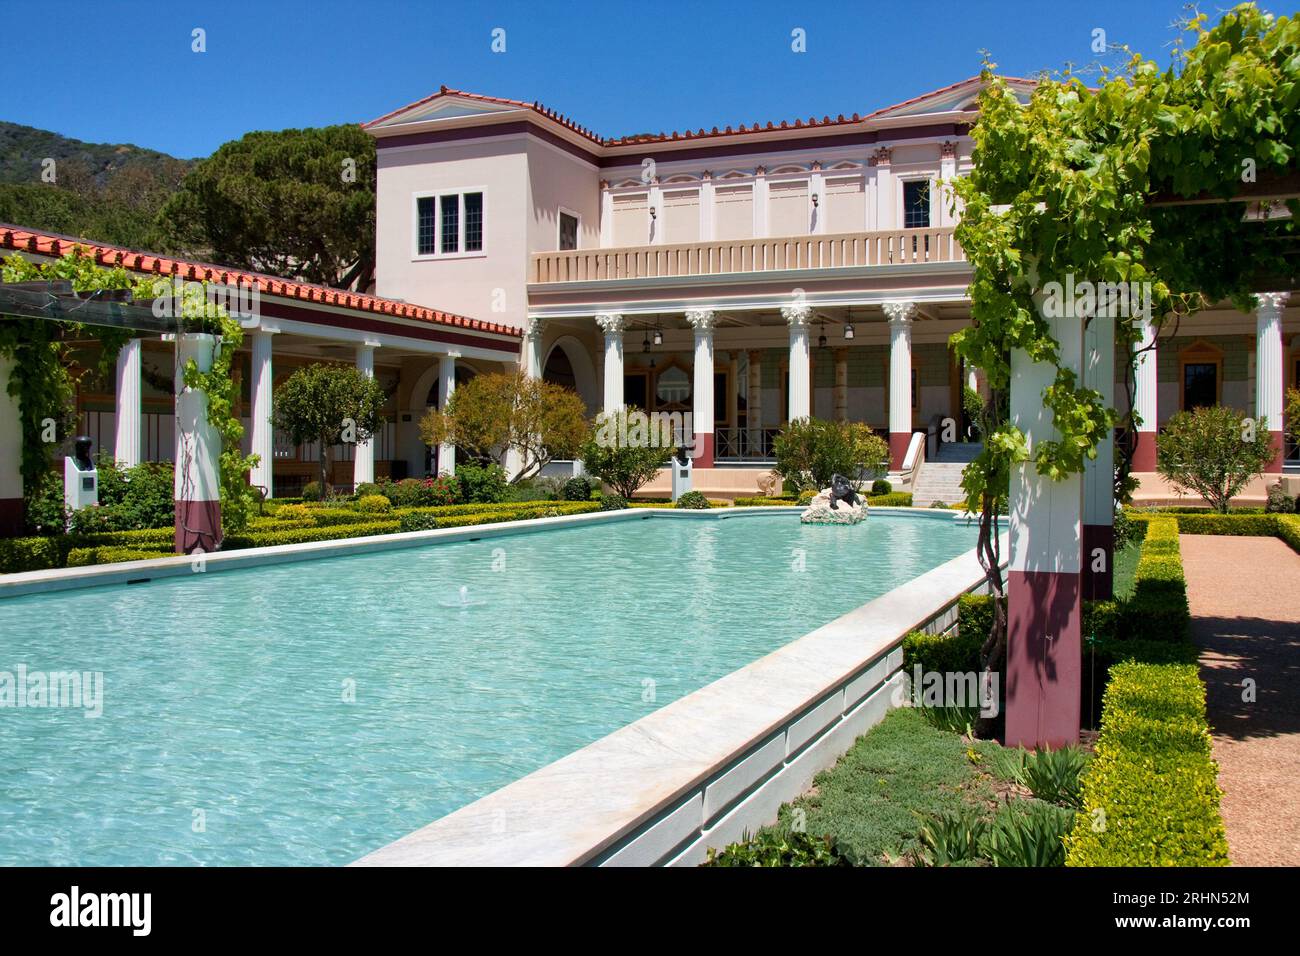 The Getty Villa in Malibu, California Stock Photo